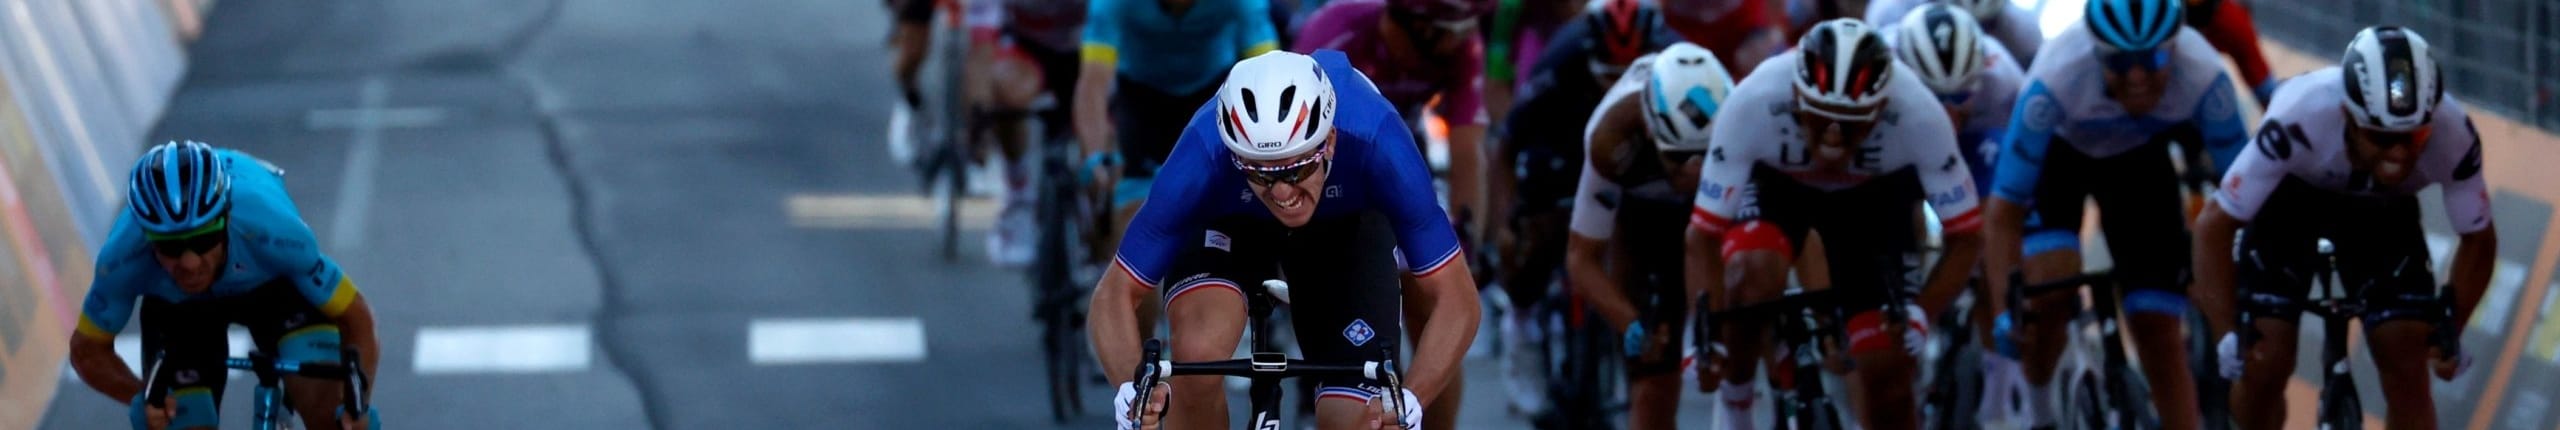 Giro d'Italia 2020, quote e favoriti per la tappa 7: ancora un'occasione per gli sprinter